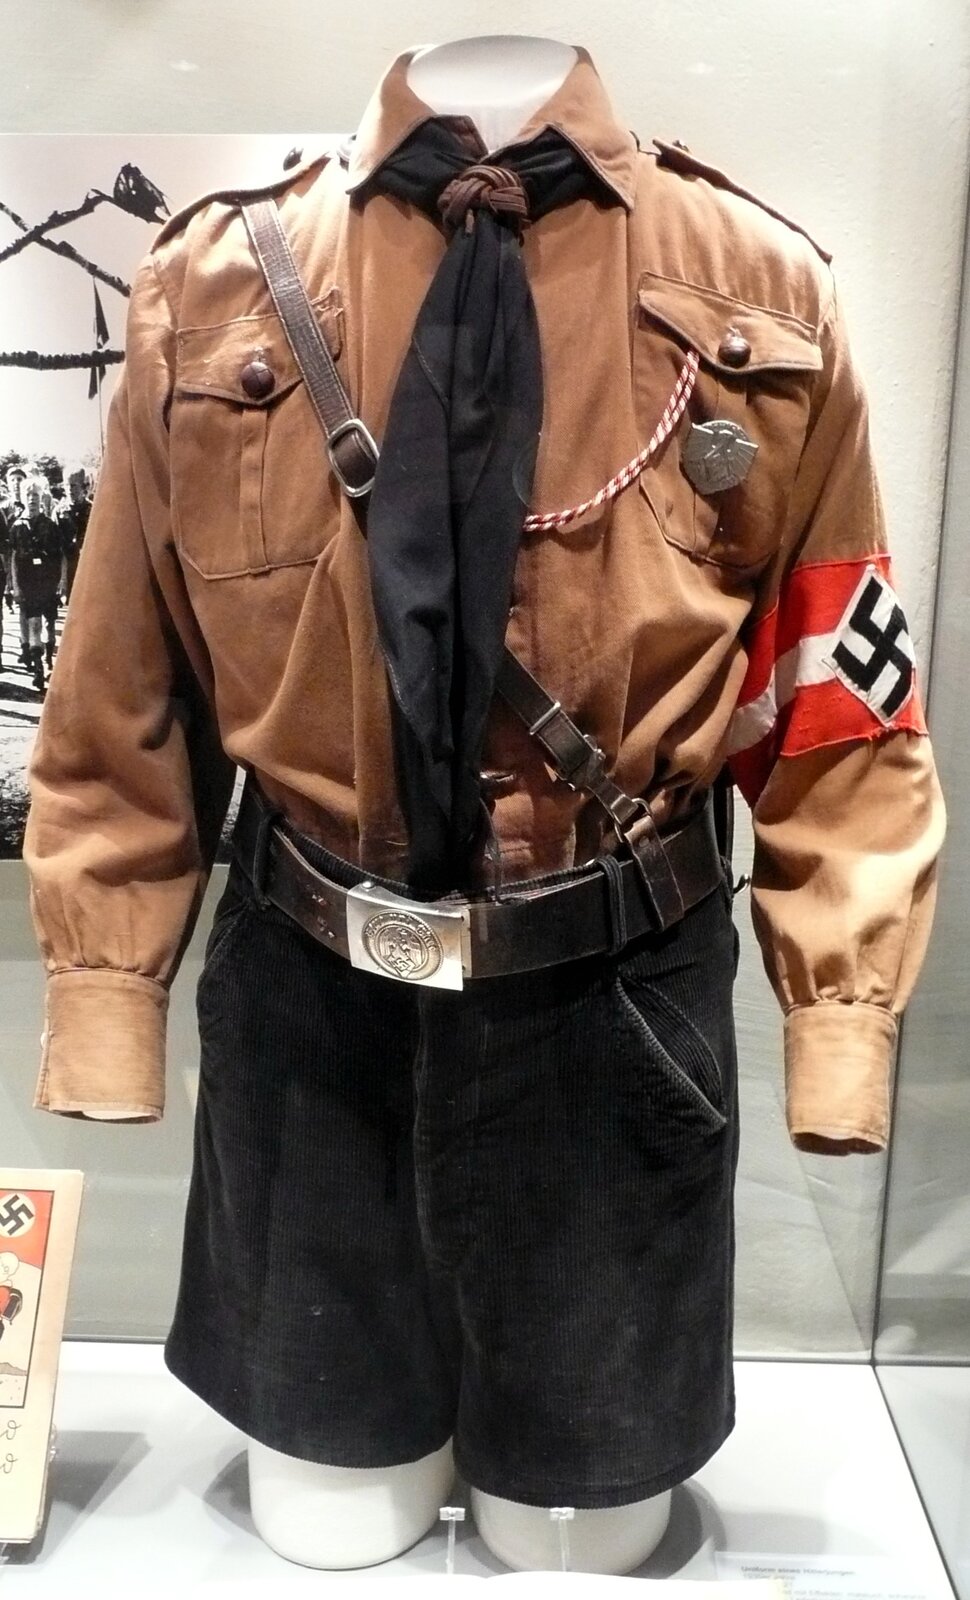 Zdjęcie przestawia mundur Hitlerjugend zawieszony na manekinie bez głowy. Mundur składa się z brunatnej koszuli i czarnej chusty. Na lewym ramieniu jest czerwonobiała przepaska ze swastyką. Spodenki są krótkie i czarne, spięte paskiem z klamrą.